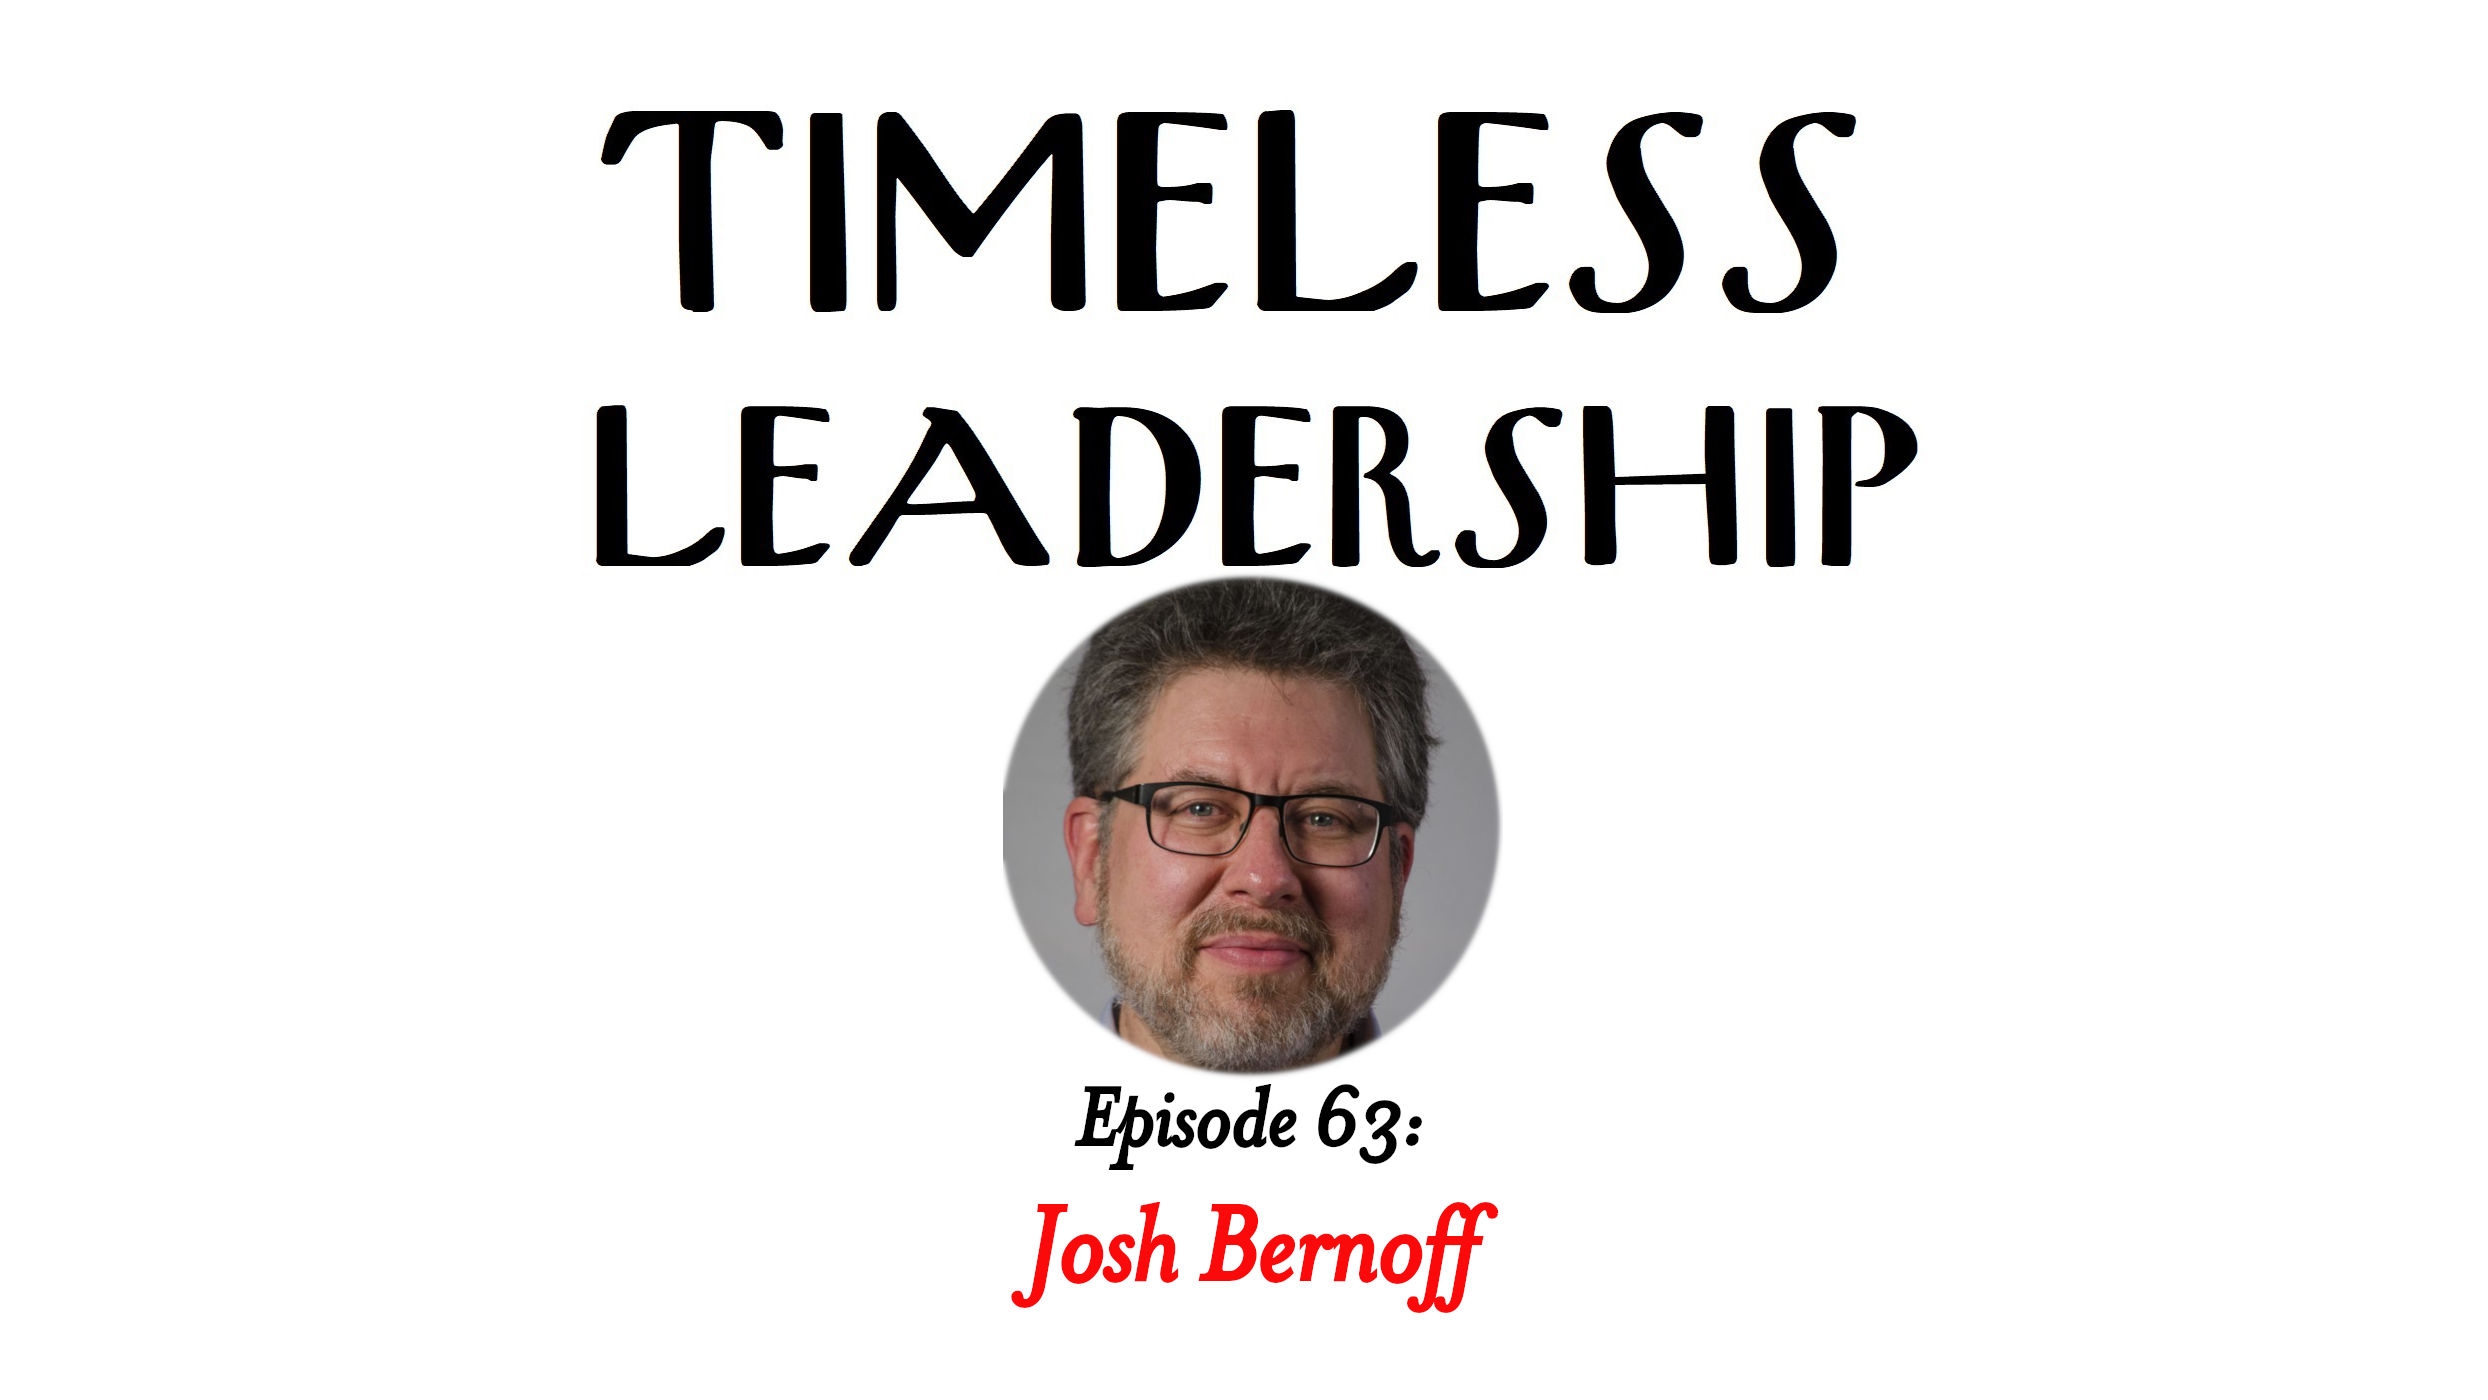 Episode 63: Build a Better Business Book with Josh Bernoff